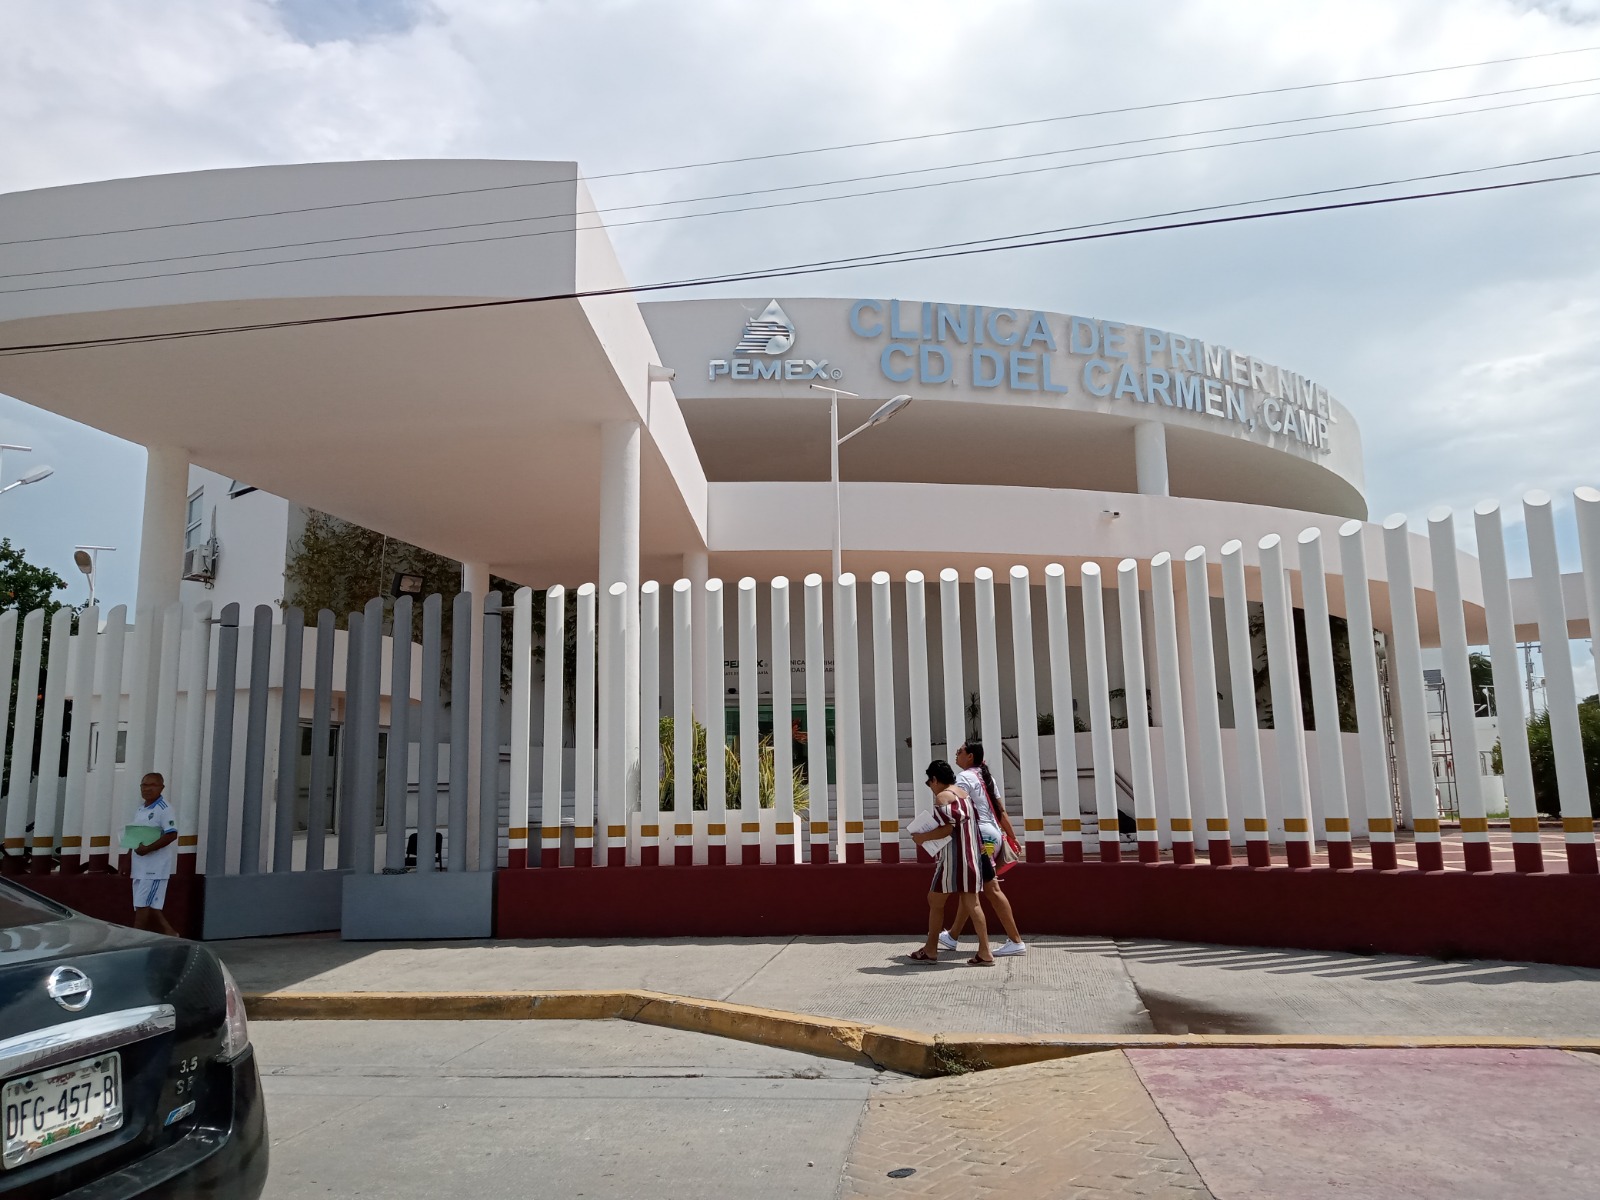 Clínica de primer nivel de PEMEX con escasez de medicamentos: En Ciudad del Carmen